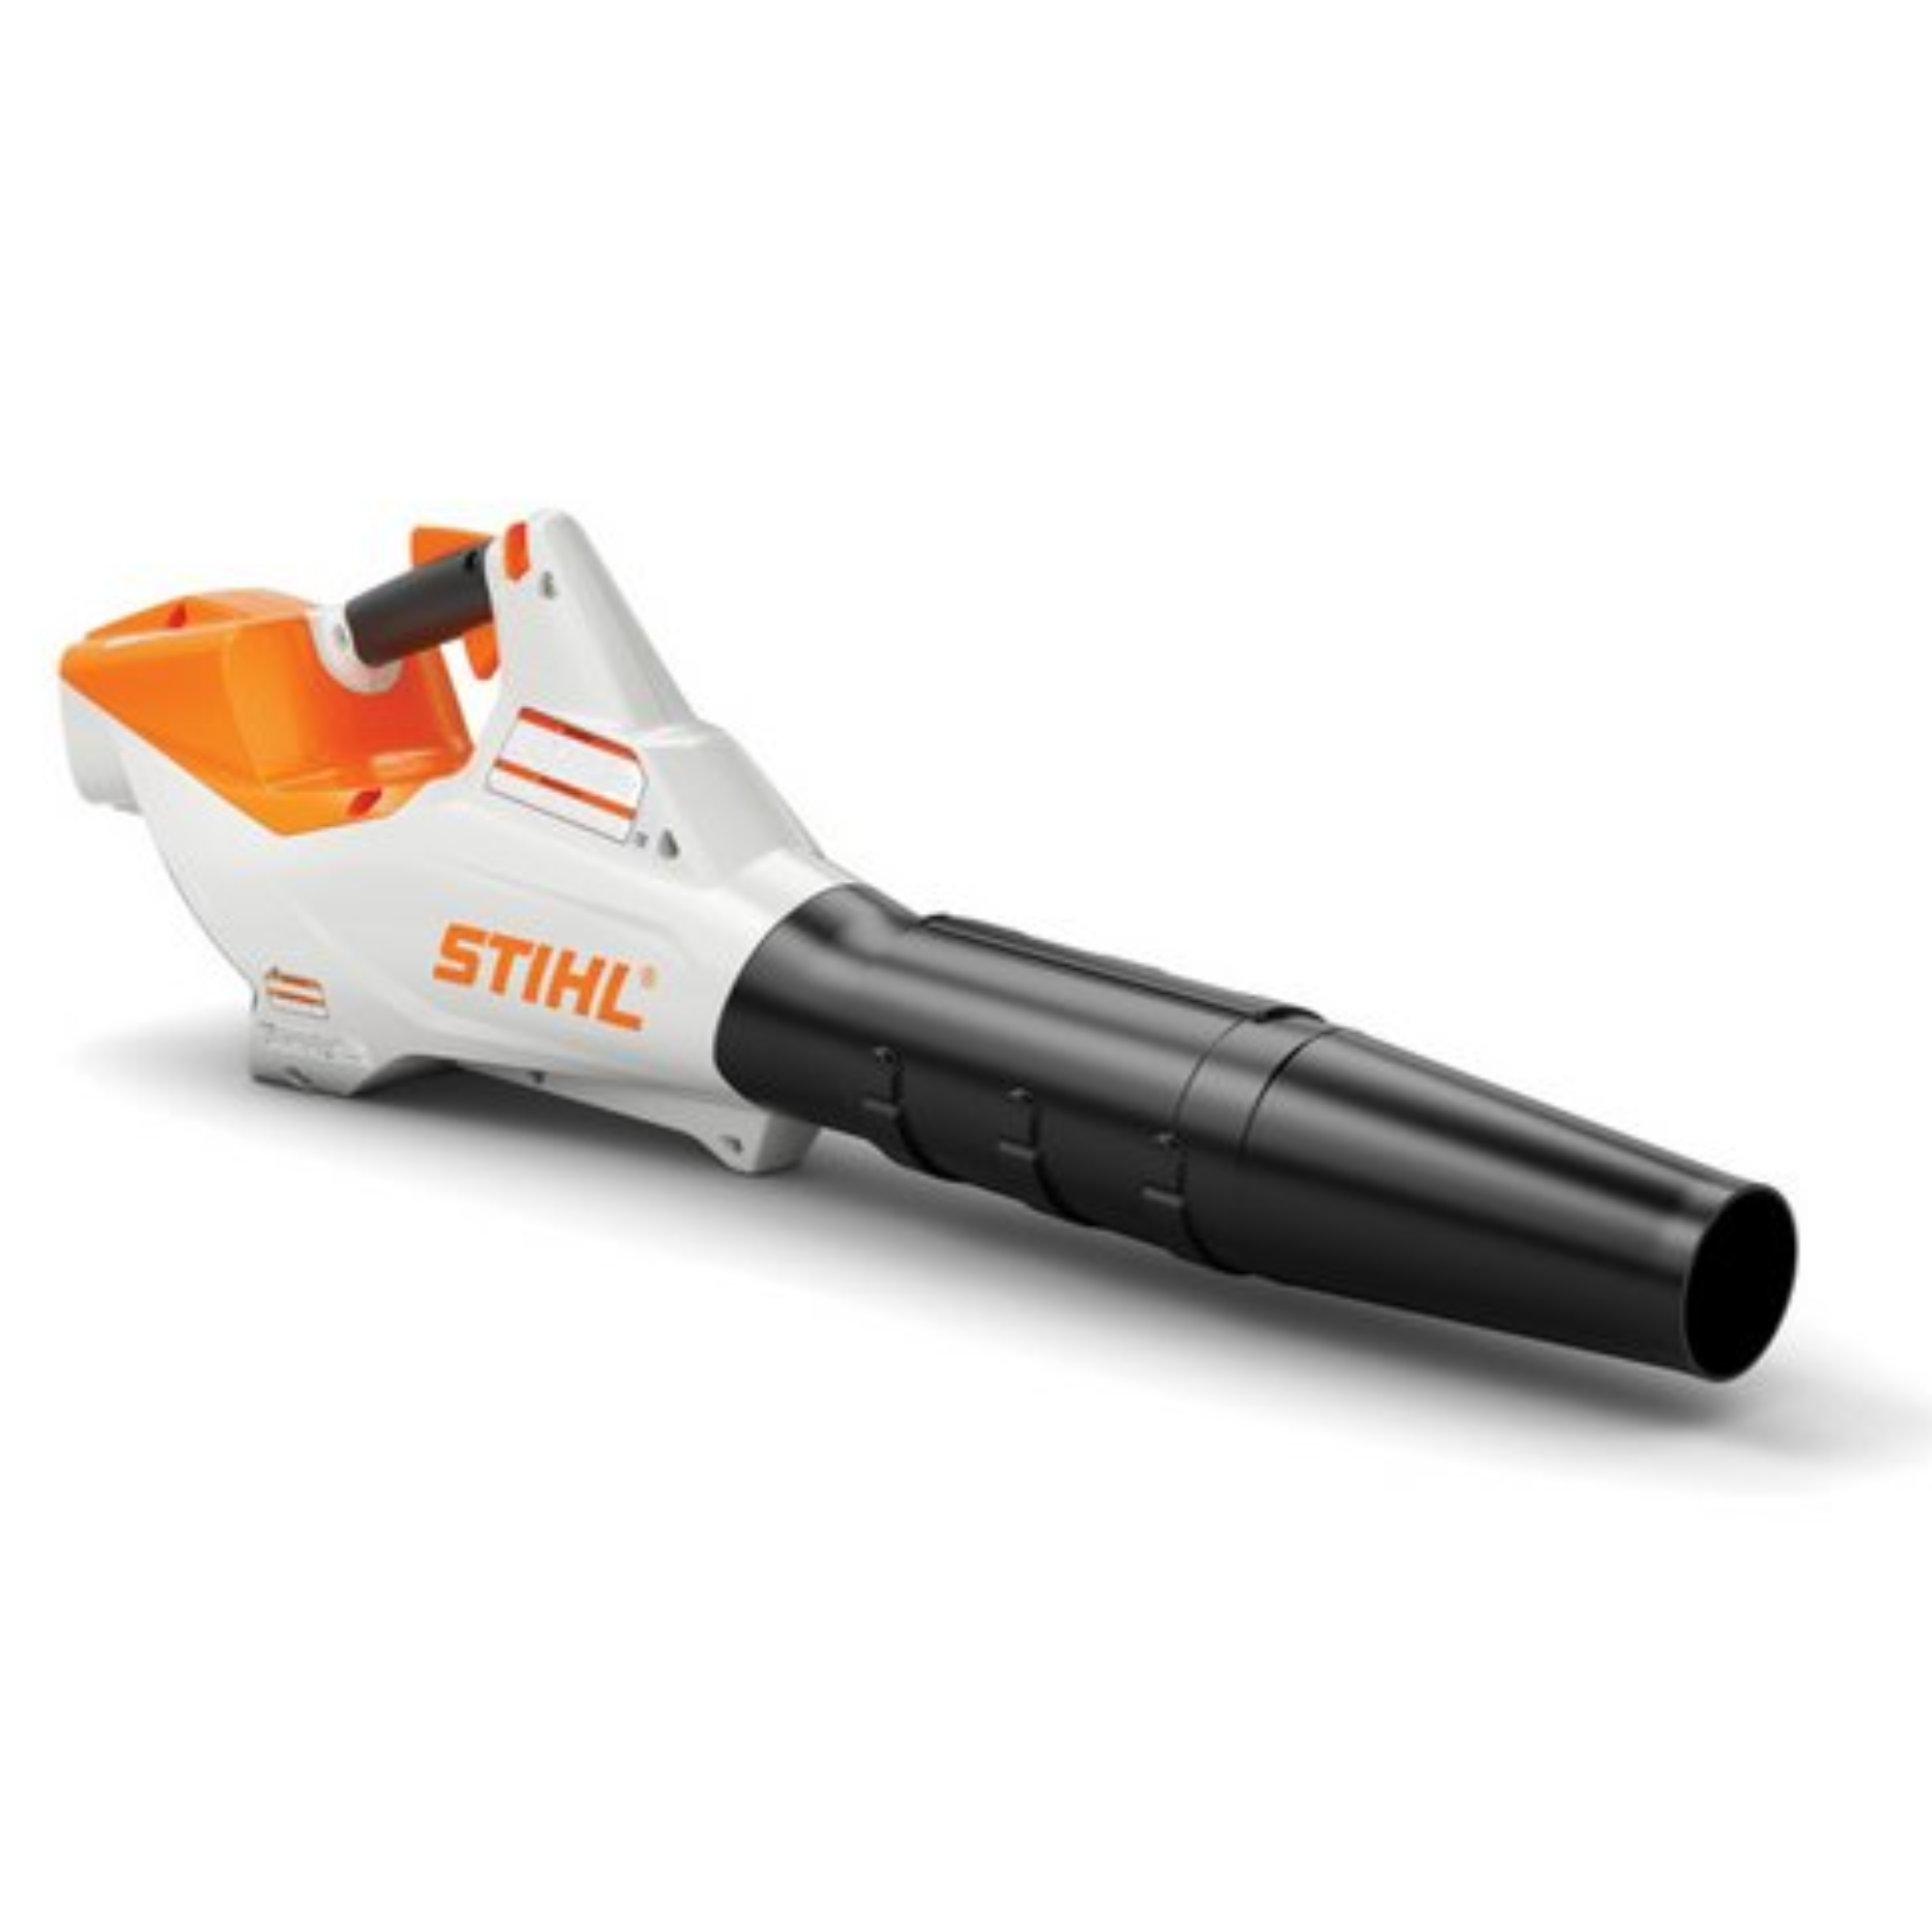 Stihl BGA 86 Battery Powered Handheld Blower | Tool Only